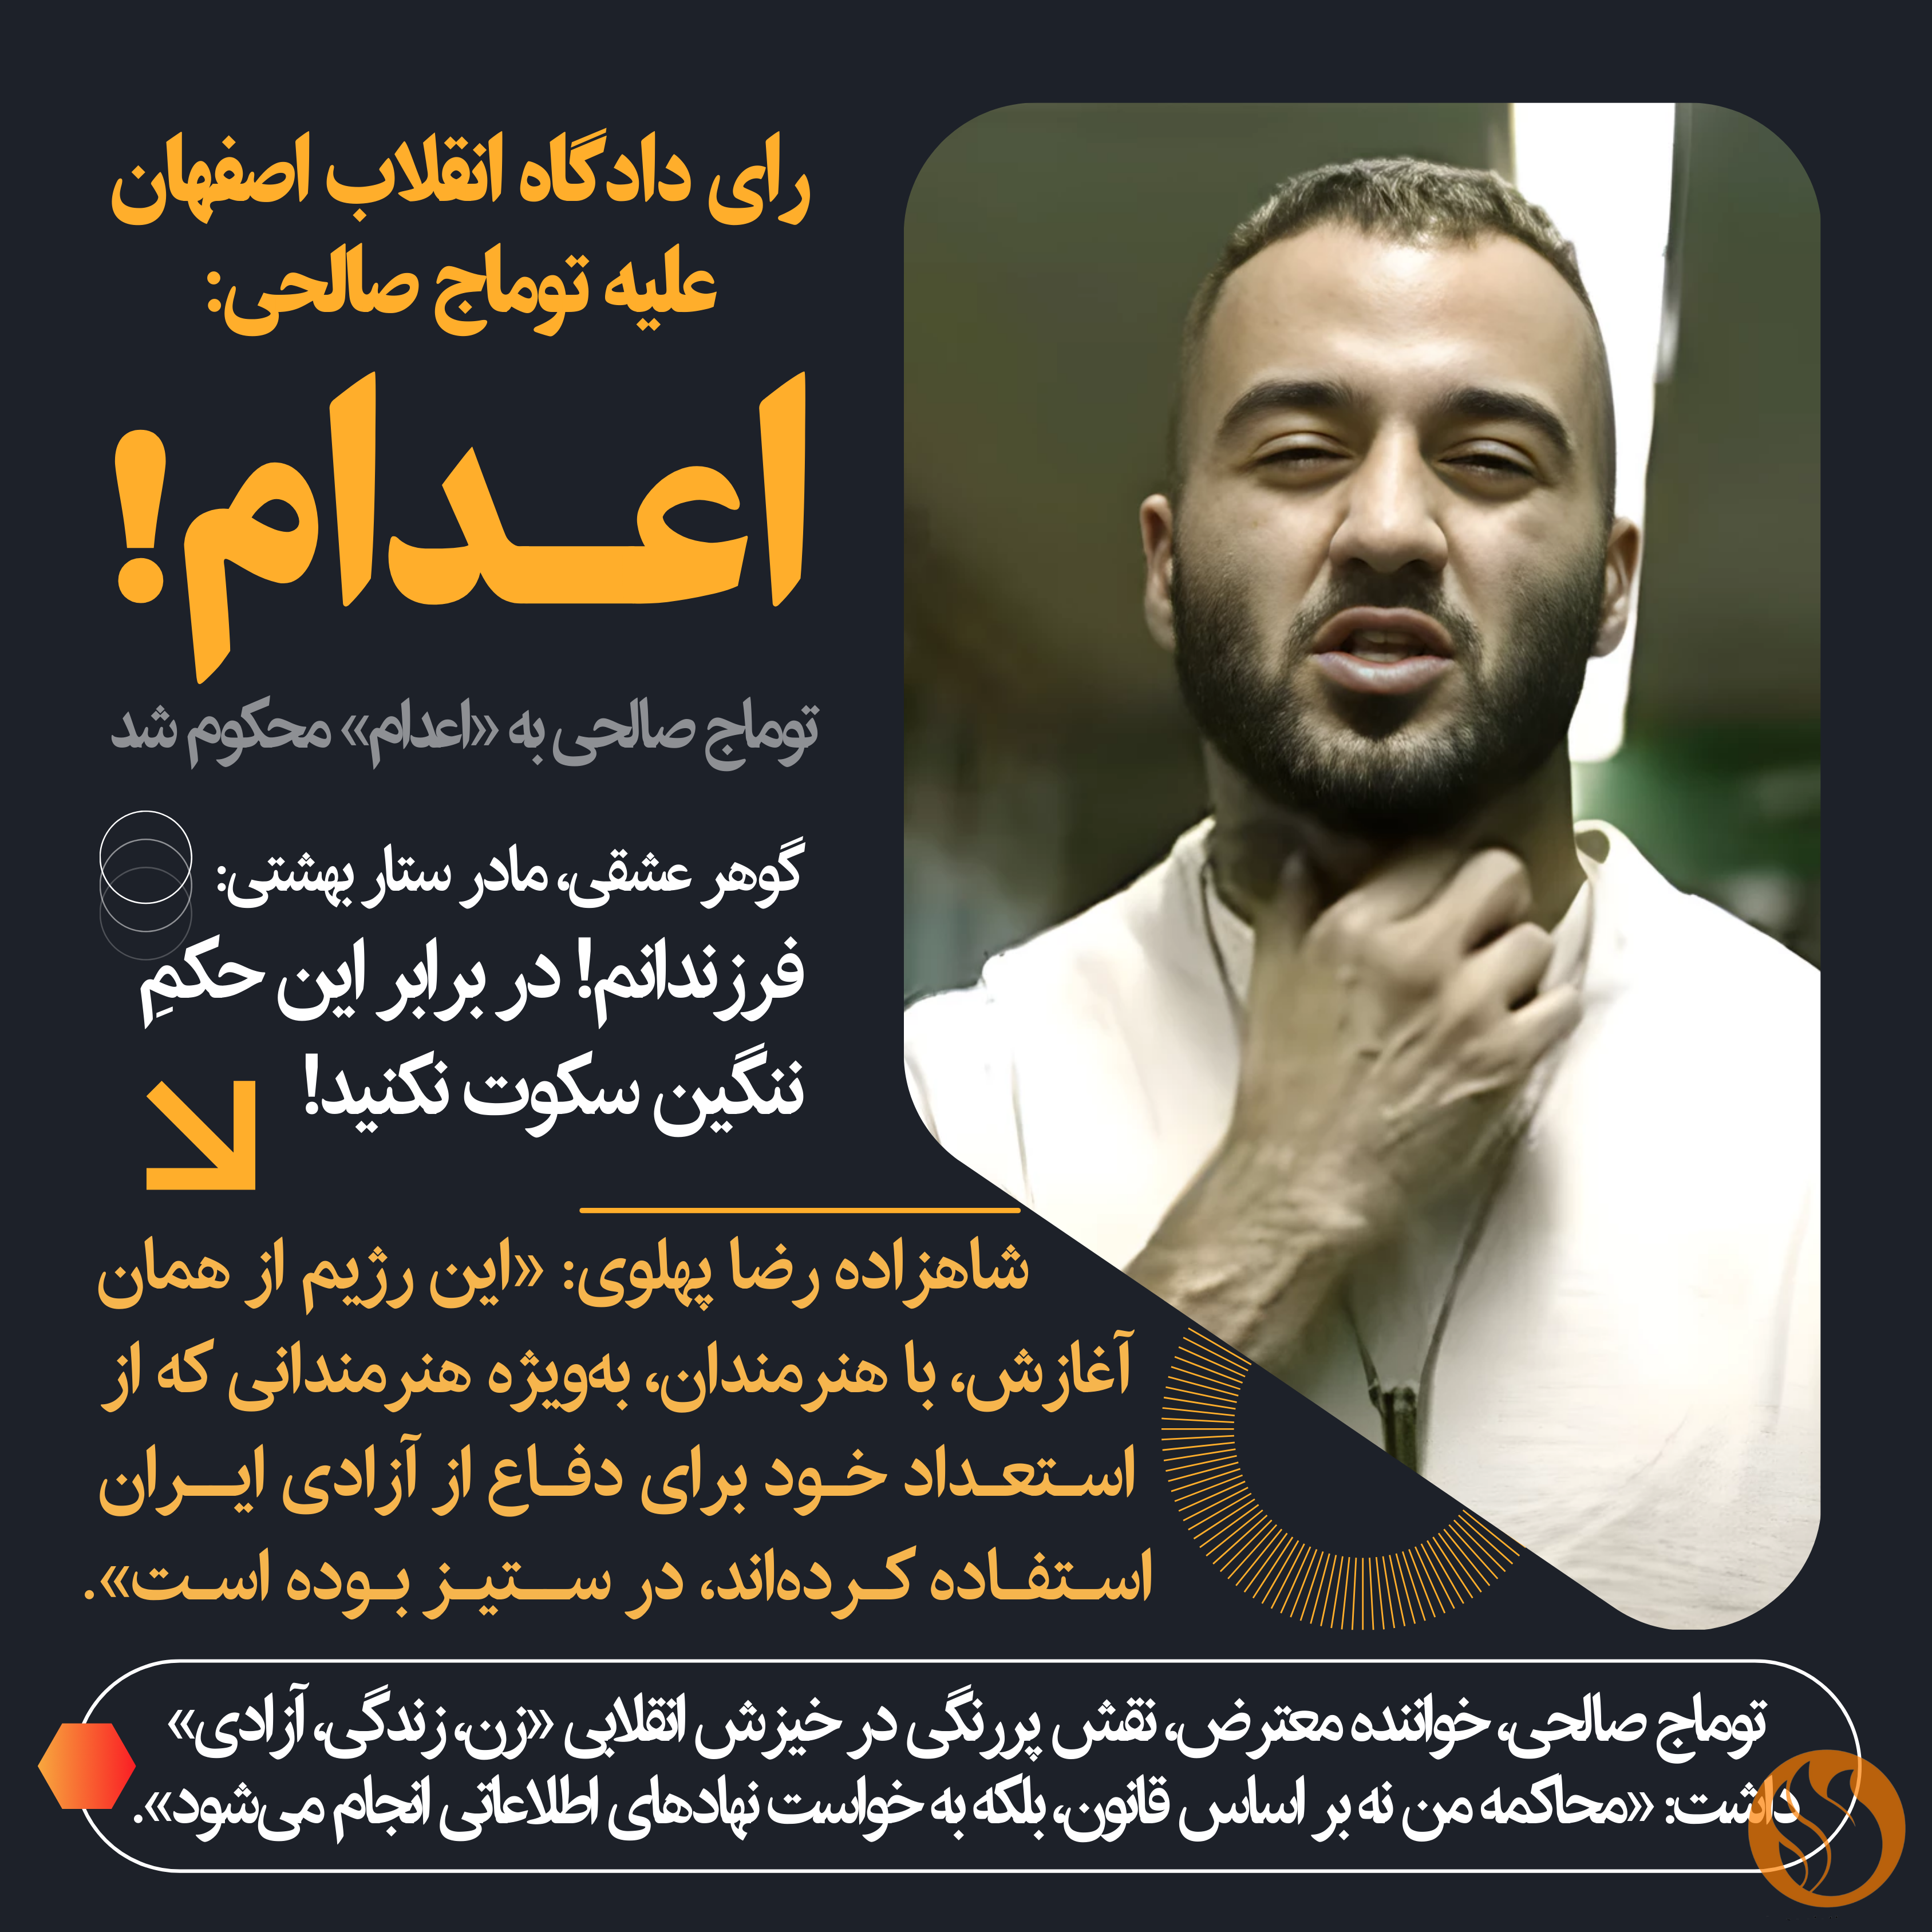 توماج صالحی، خواننده معترض، نقش پررنگی در خیزش انقلابی «زن، زندگی، آزادی» توسط دادگاه انقلاب اصفهان به اعدام محکوم شد.